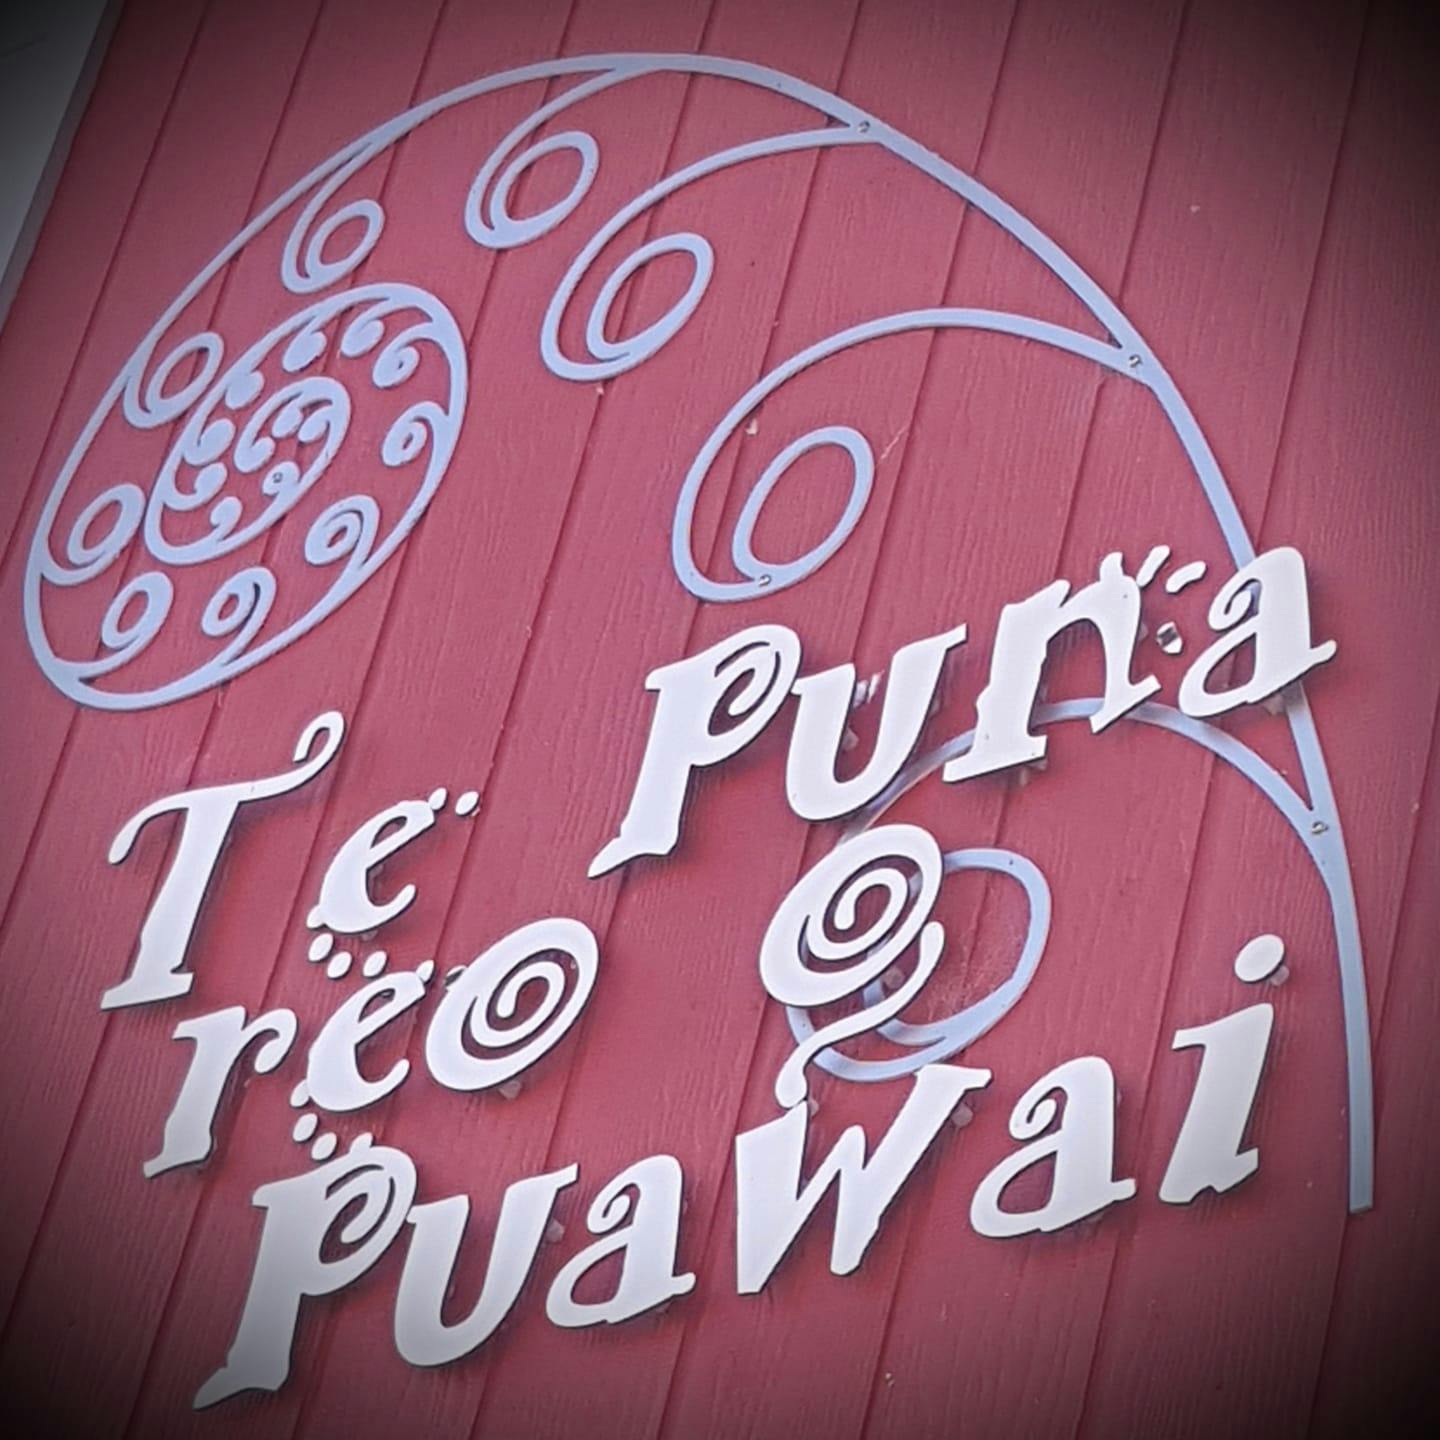 A picture of Te Puna Reo o Puawai